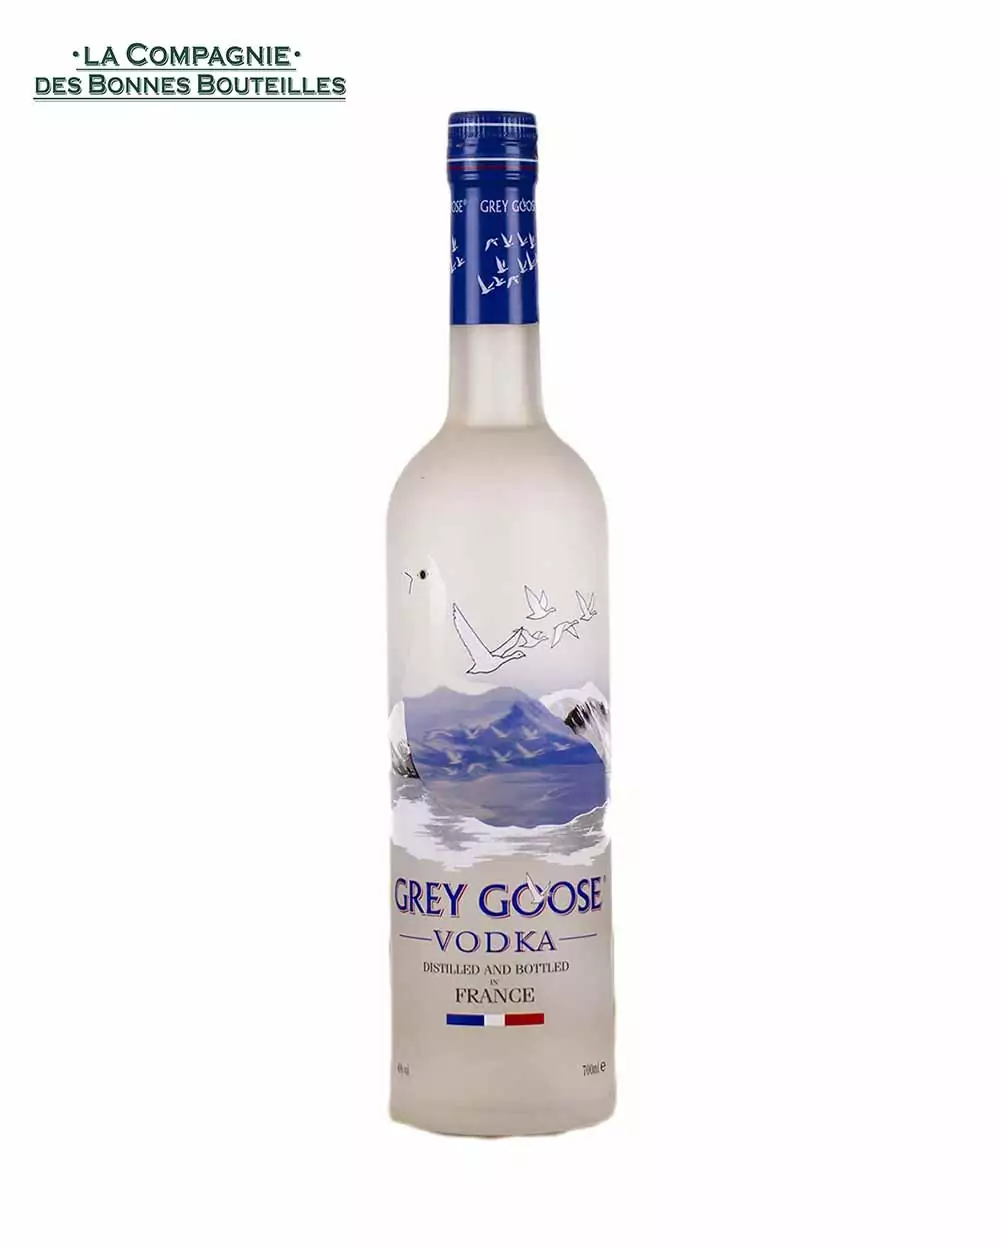 Vodka Grey goose original 70 cl